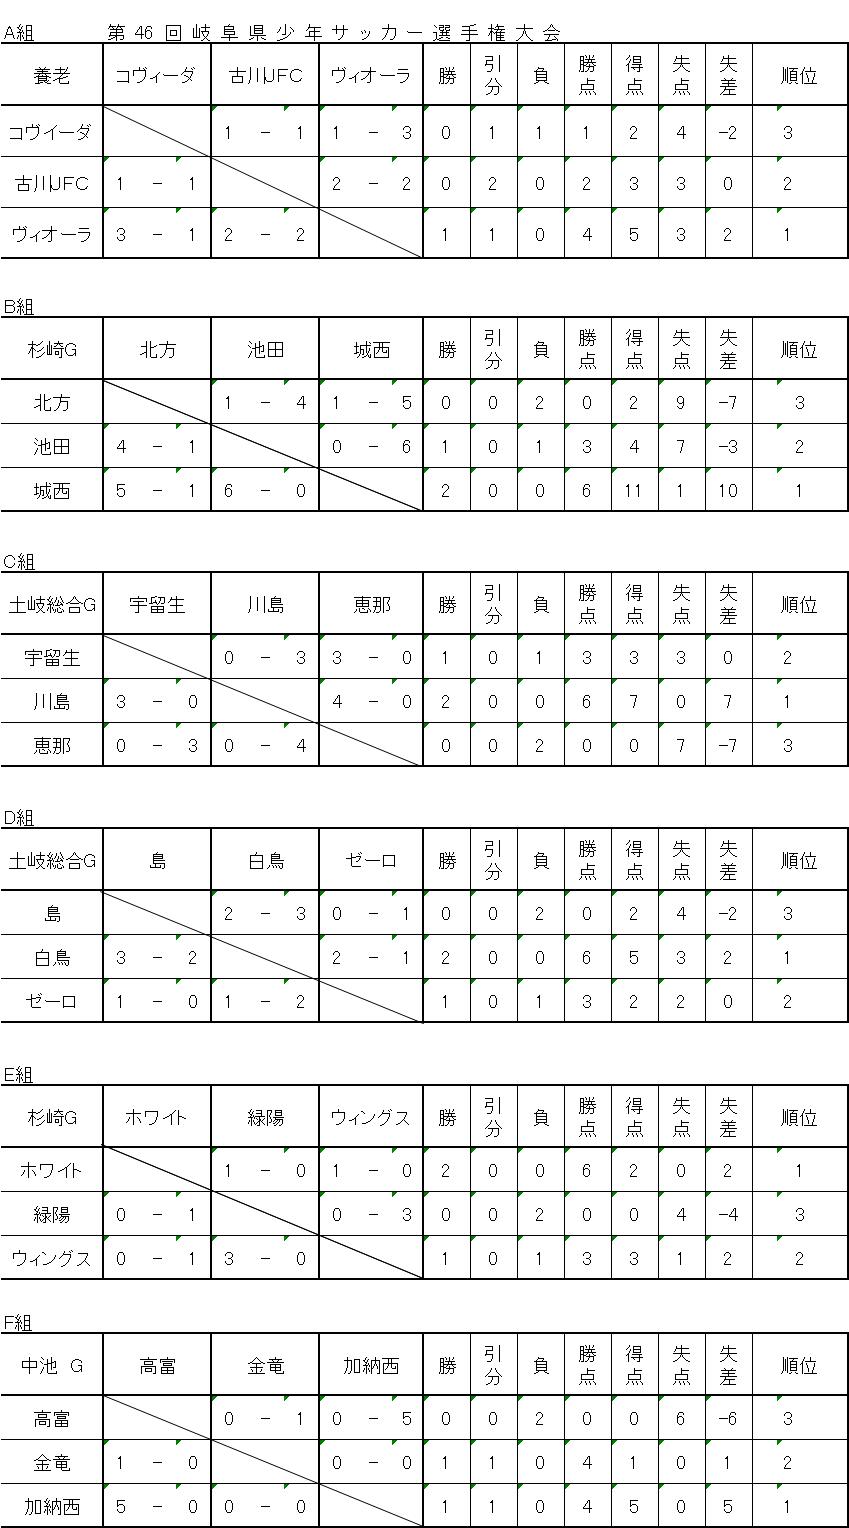 2013dai 46kai 1zi ri-gu hositorihixyou a,b,c,d,e,f.JPG